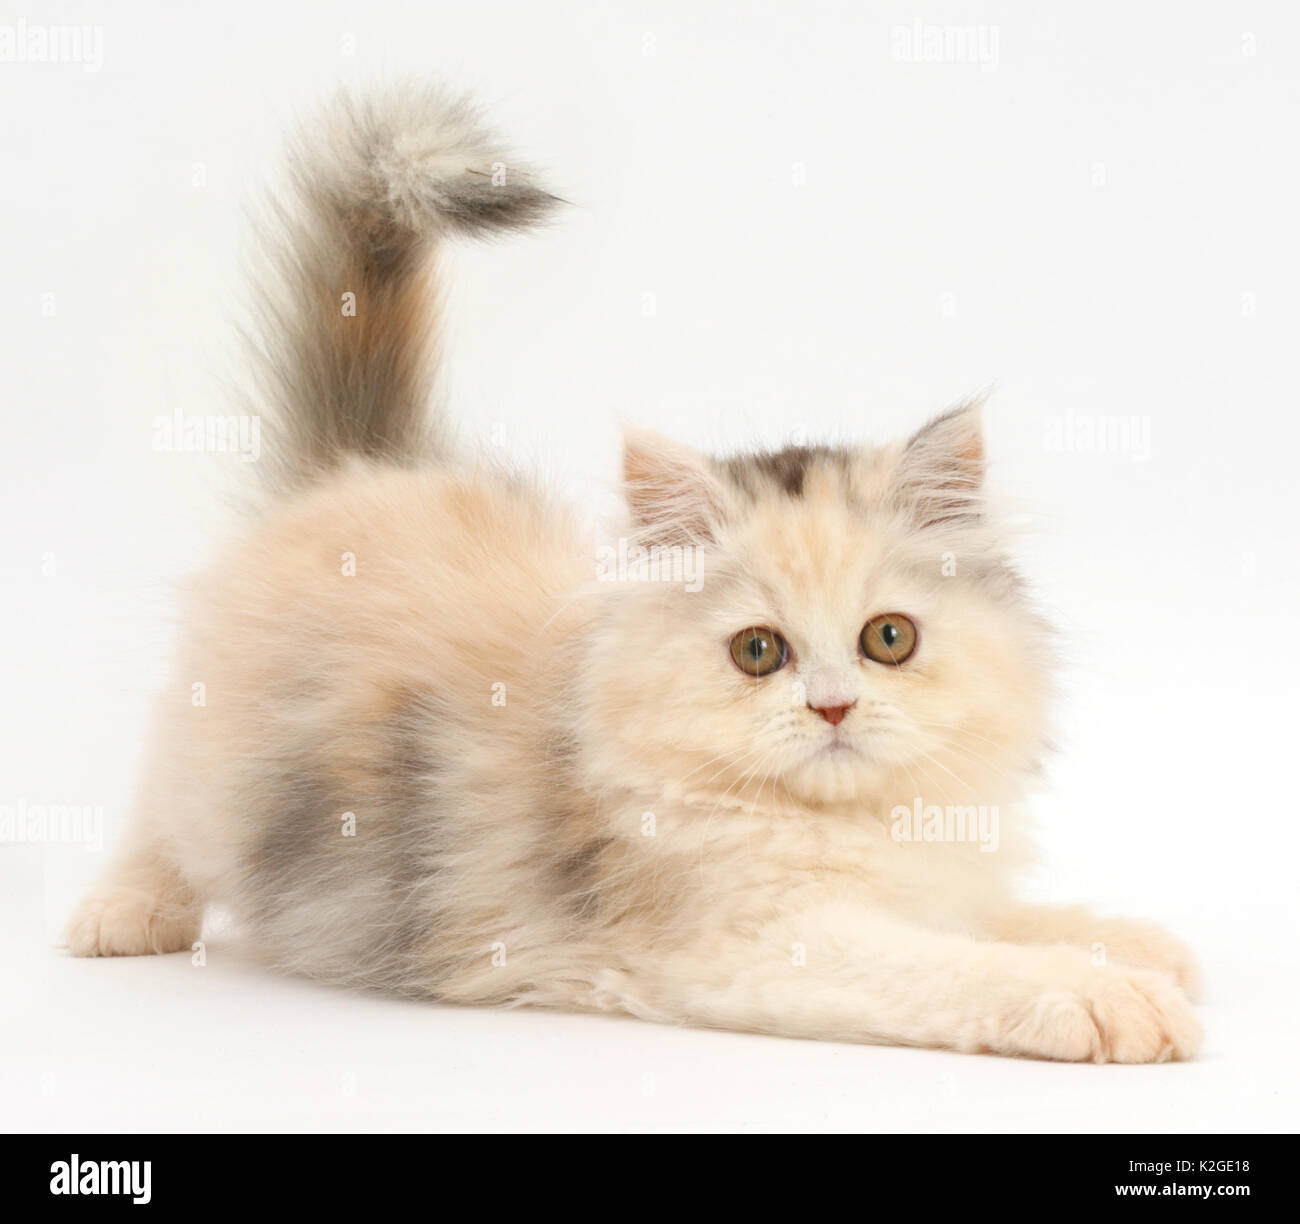 Gatito persa en postura juguetona. Foto de stock